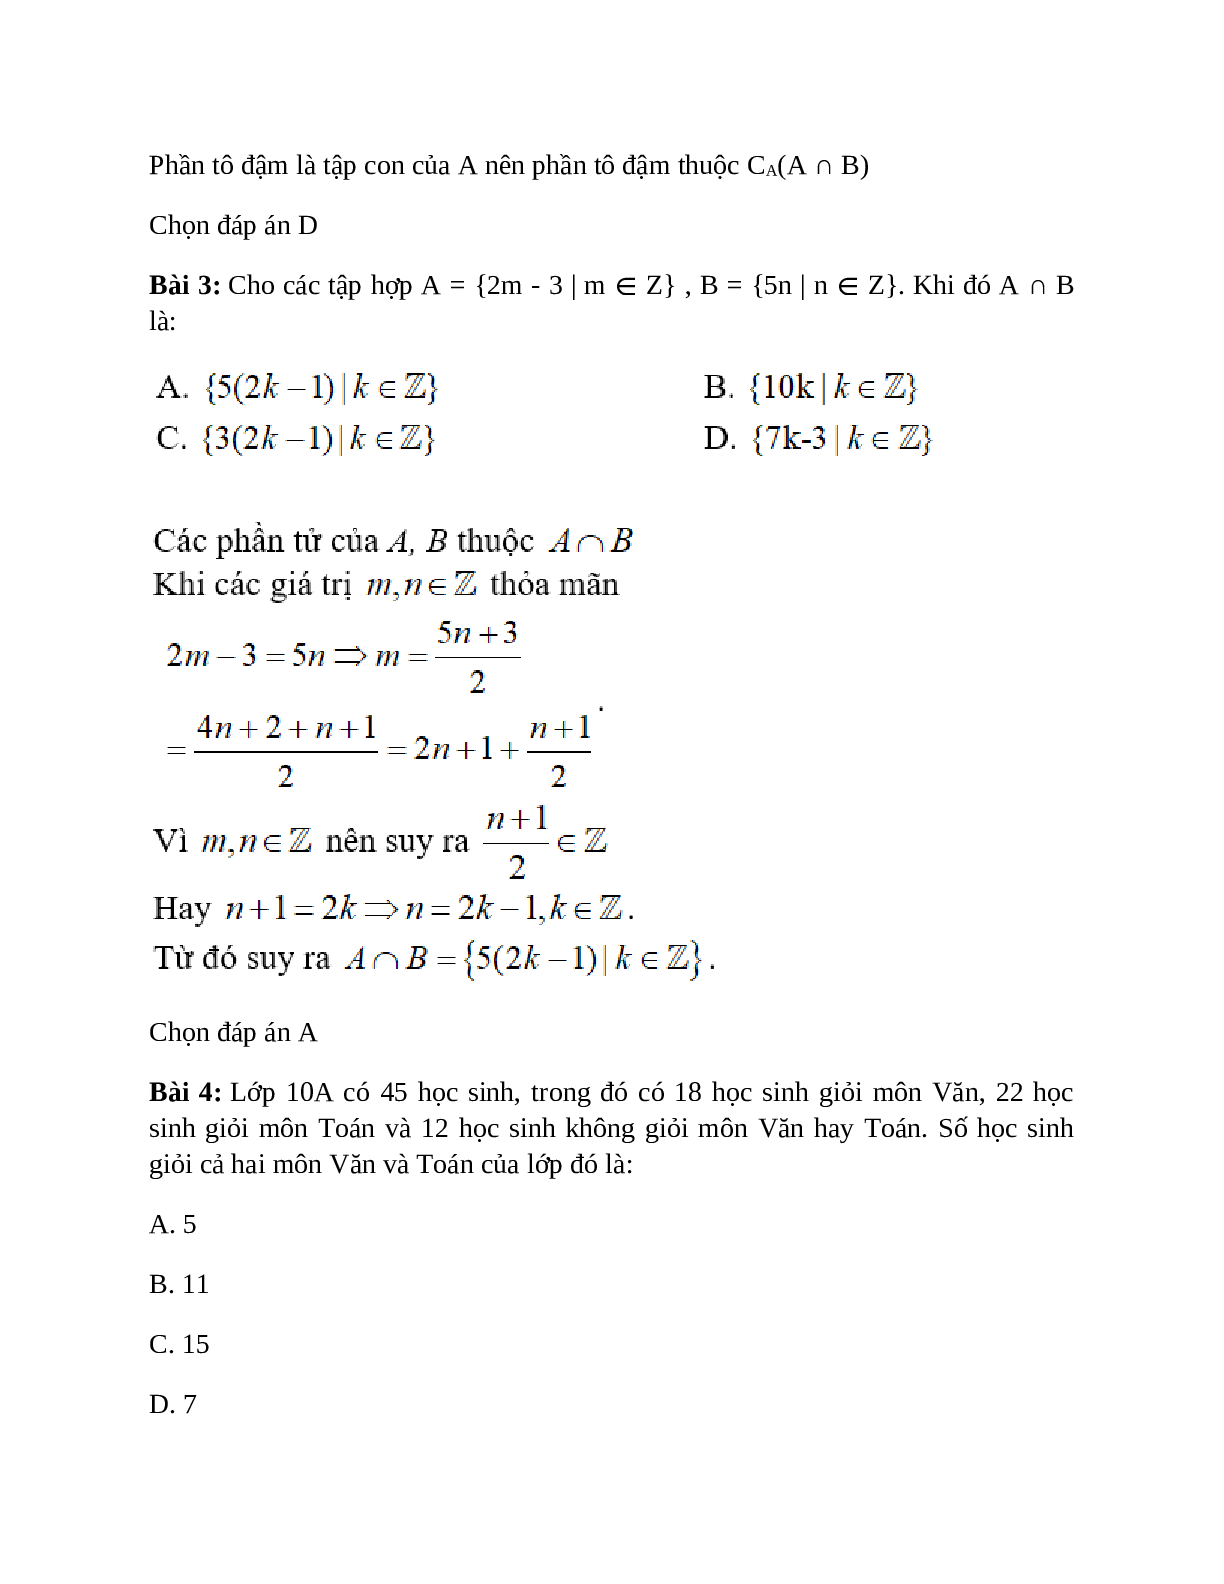 Trắc nghiệm Các phép toán tập hợp có đáp án – Toán lớp 10 (trang 2)